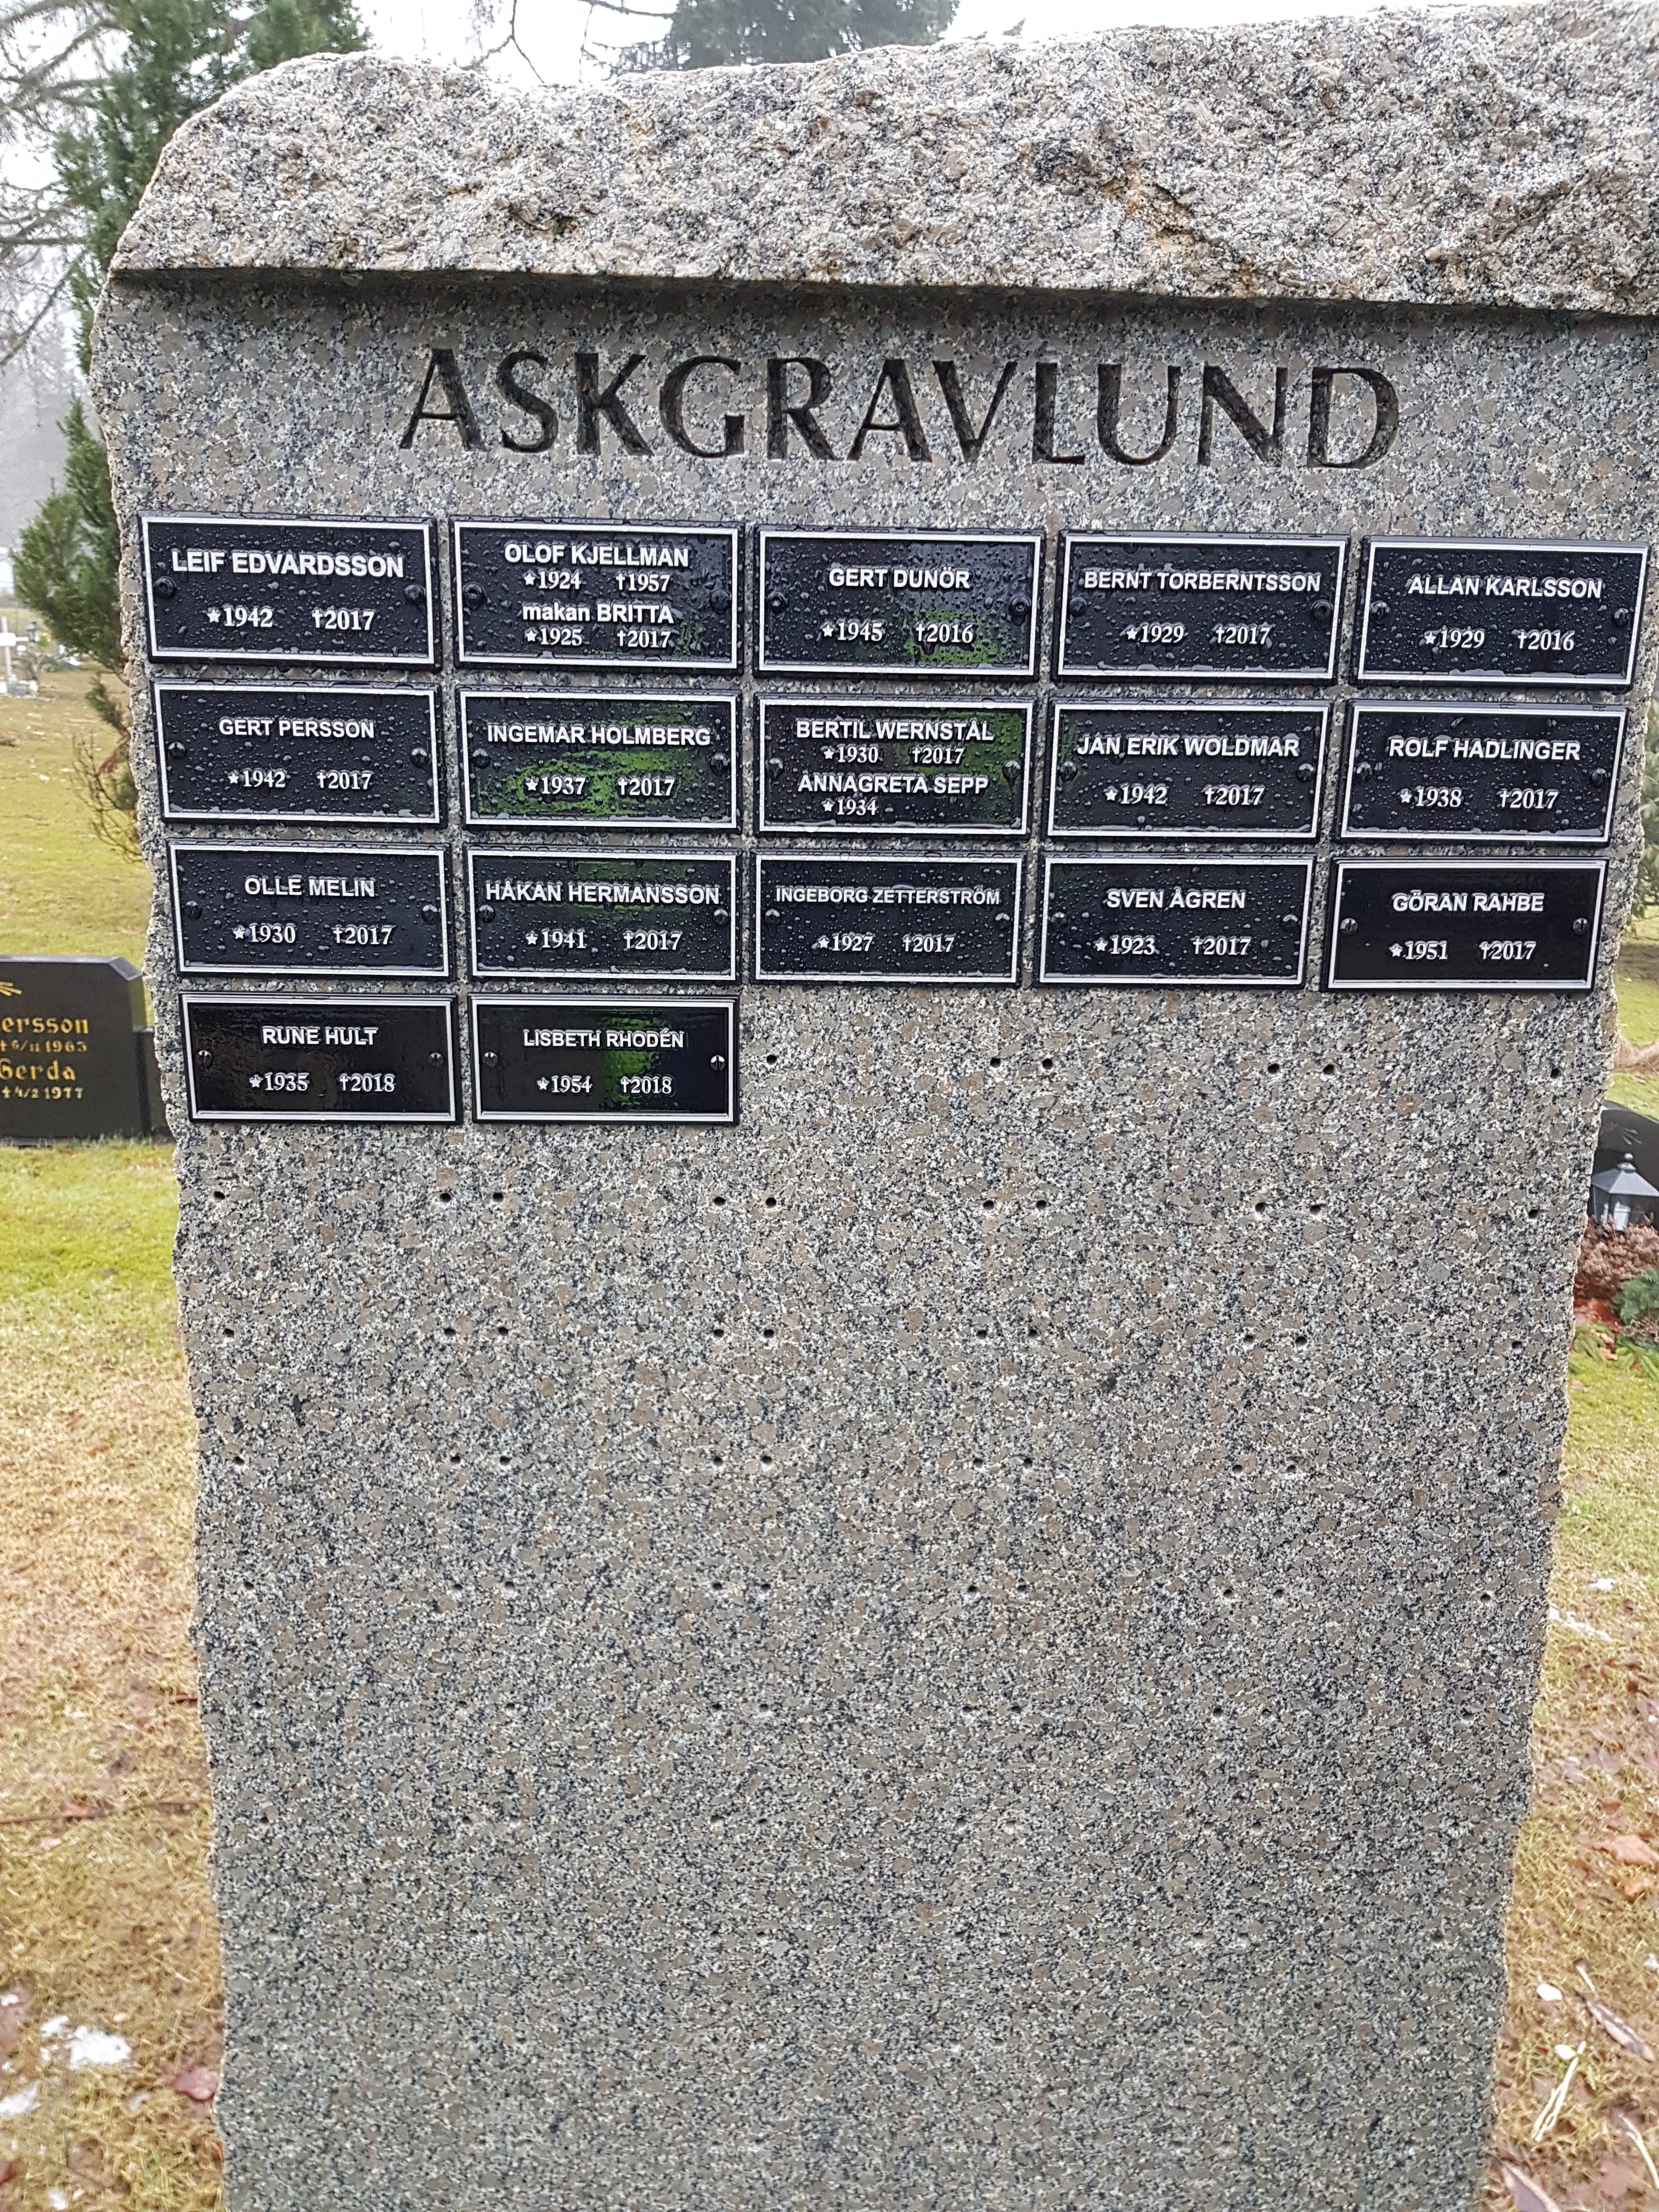 Askgravlund